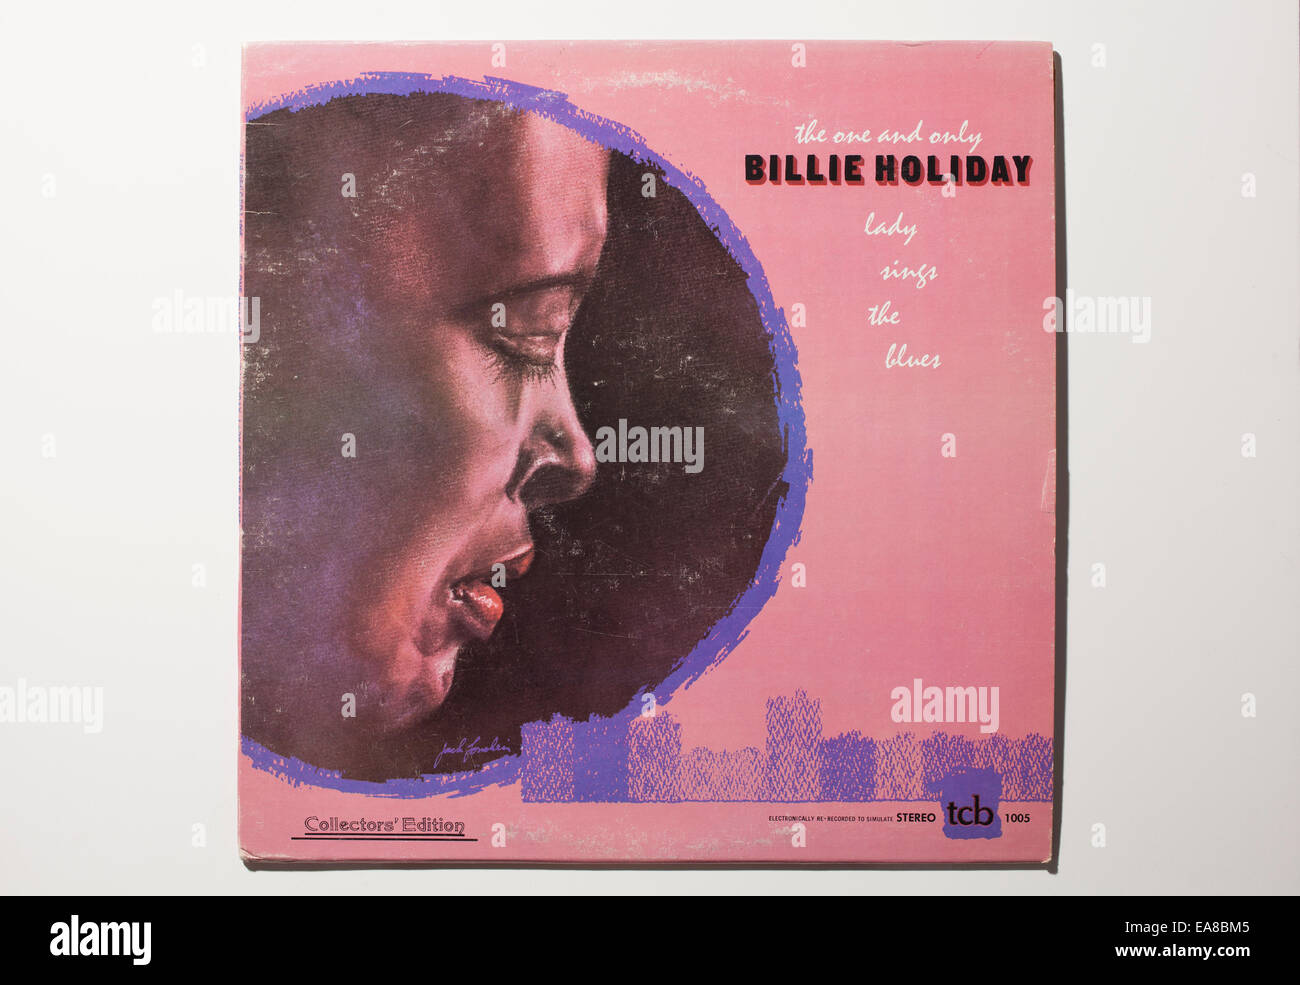 L'enregistrement de l'album vintage de la chanteuse Billie Holiday - la seule et unique Billie Holiday, Lady Sings the Blues sur l'étiquette de TCB. Banque D'Images